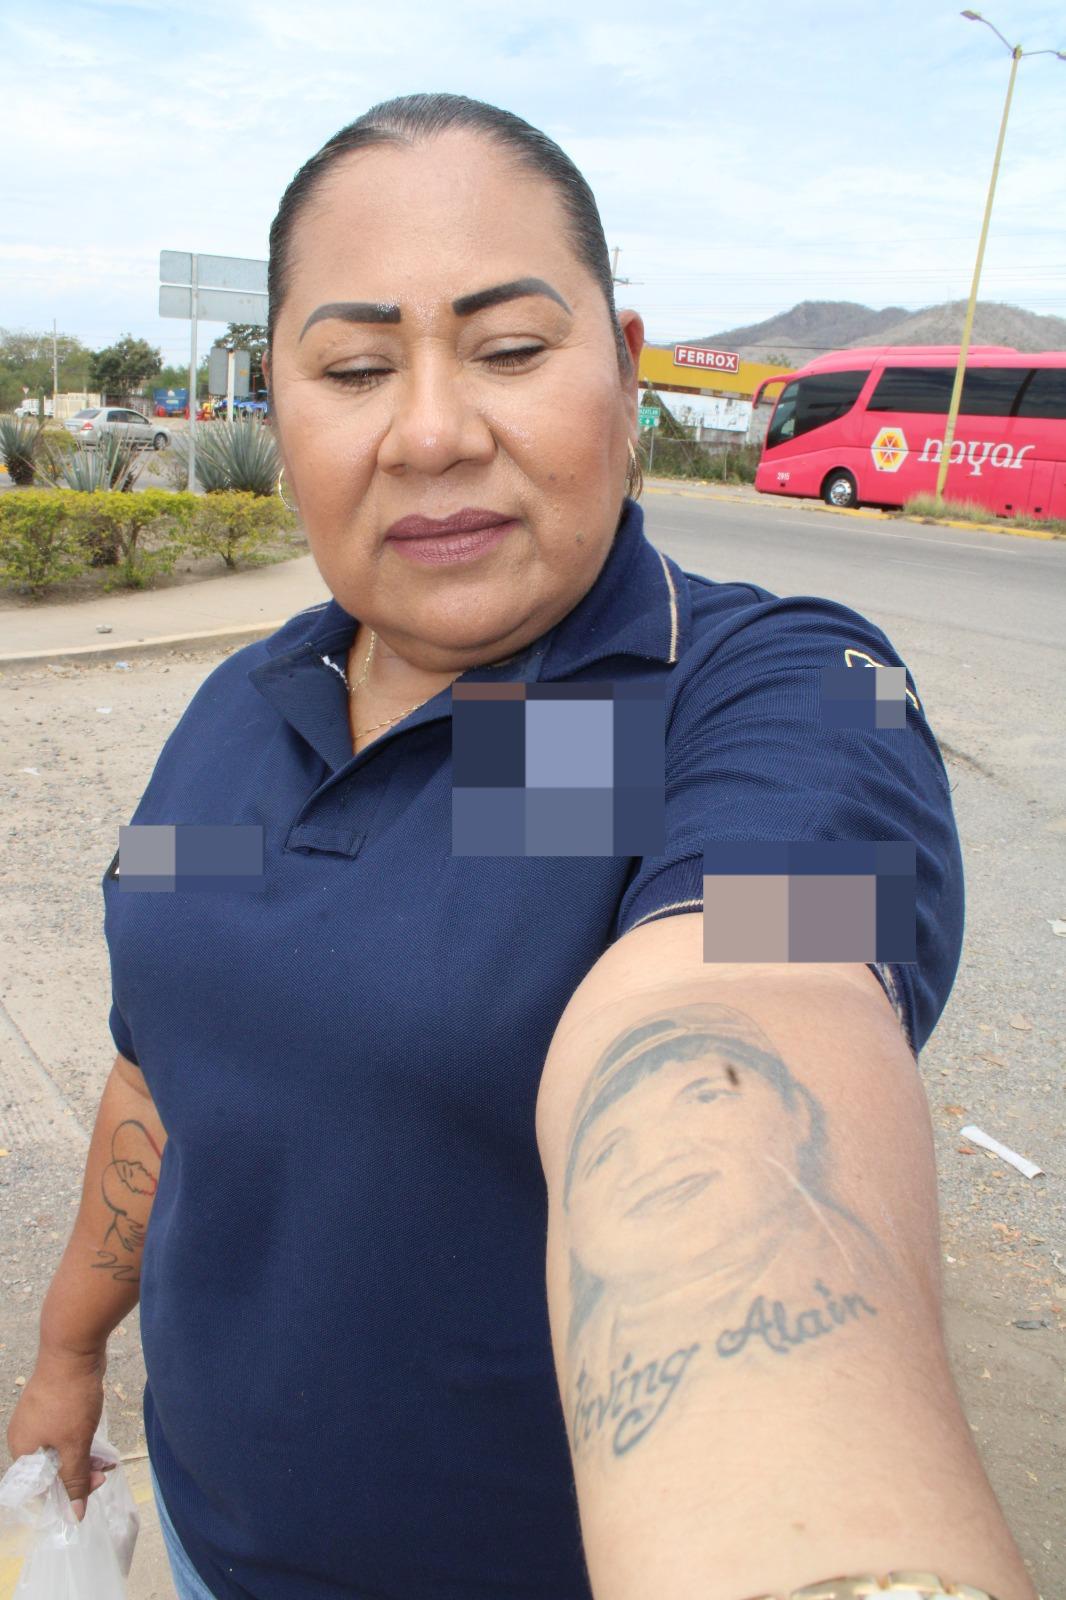 $!Irma lleva tatuada en el alma la lucha por los desaparecidos